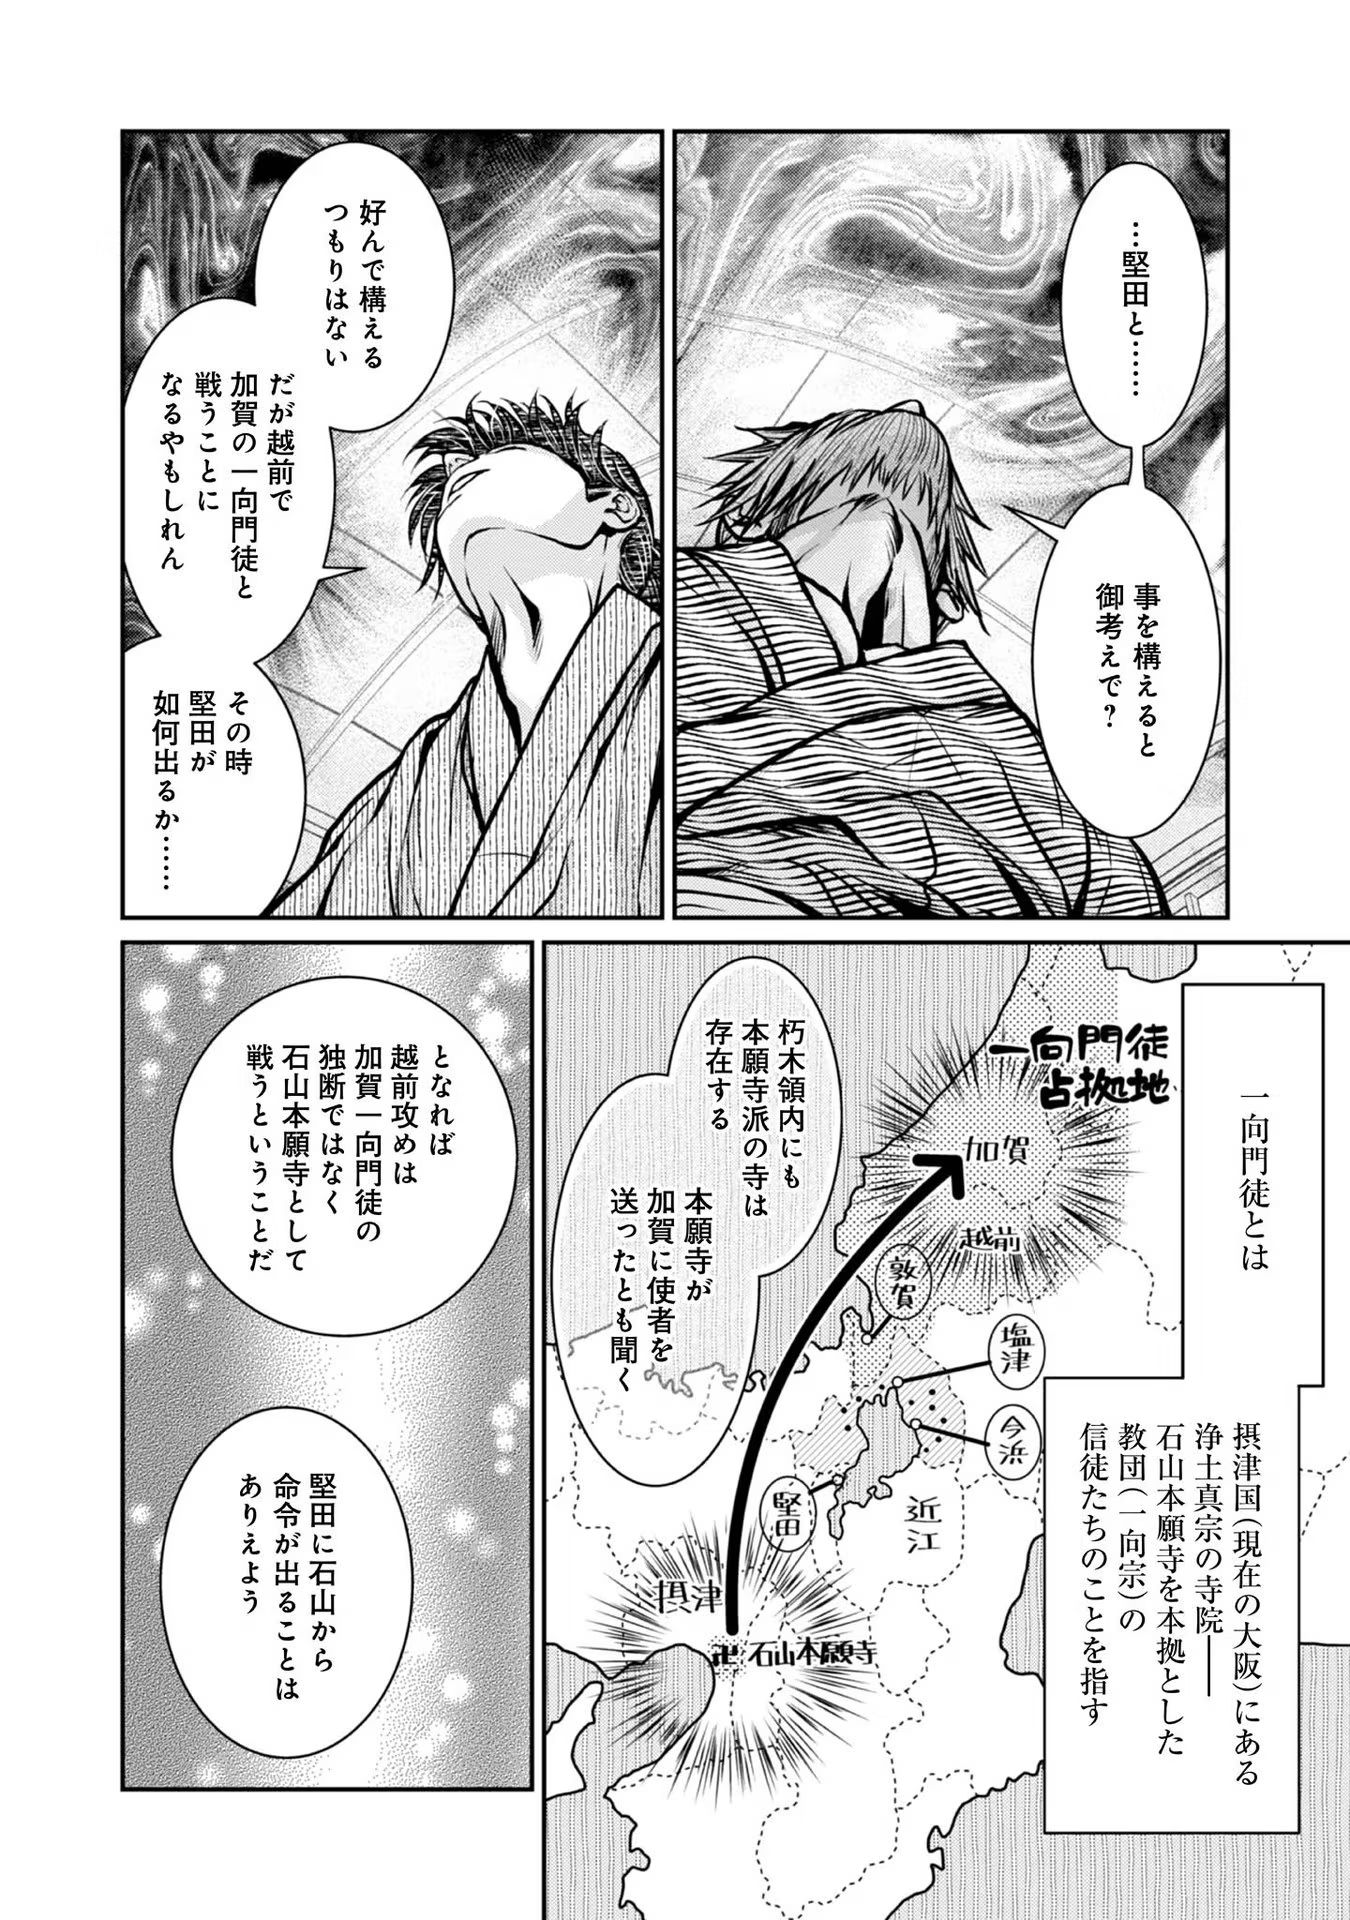 Afumi no Umi – Minamo ga Yureru Toki - Chapter 18 - Page 23